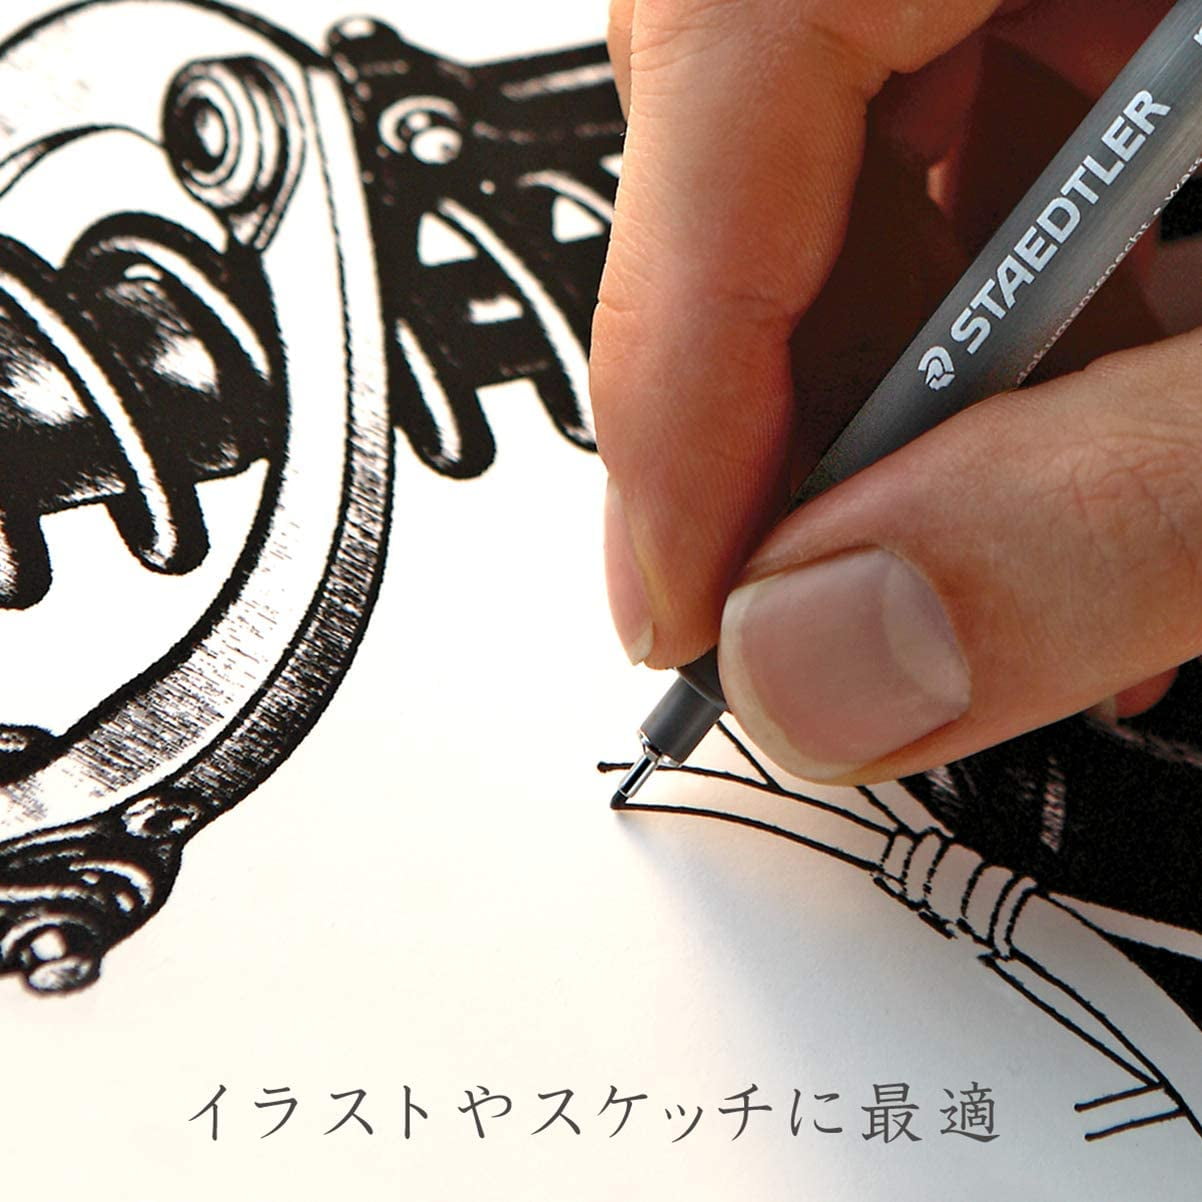 Fineliner Pen For Drawing Staedtler Pigment Liner Drafting 308 07-9 Black Journaling.7mm